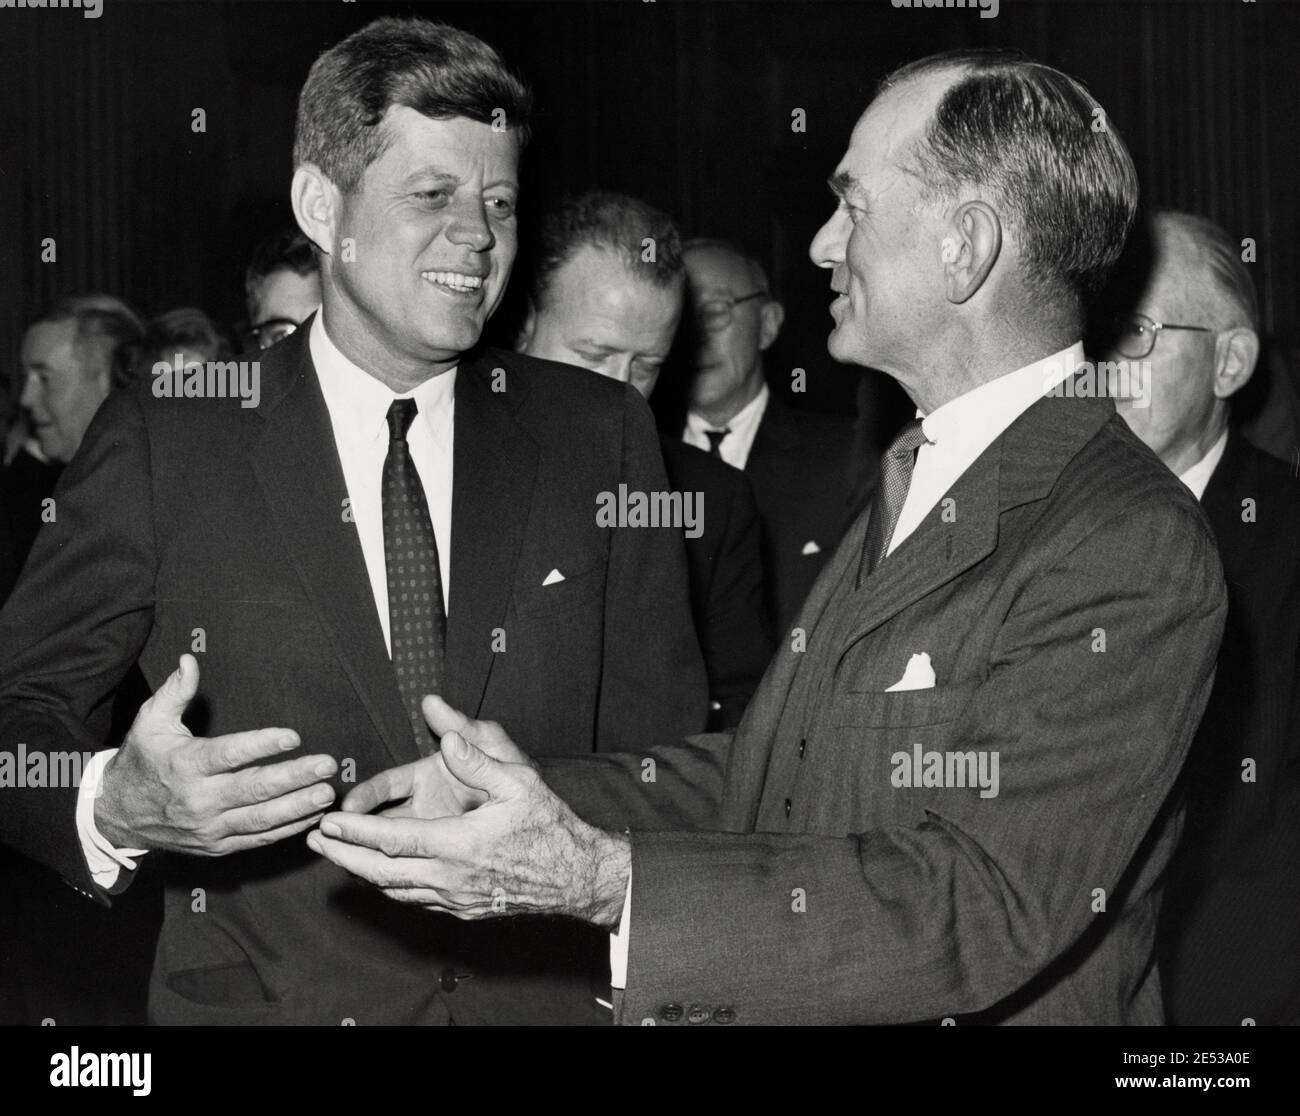 Foto zeigt Präsident Kennedy im Gespräch mit dem Senator J. William Fulbright aus Arkansas während eines Empfangs im Capitol. 1962 Stockfoto